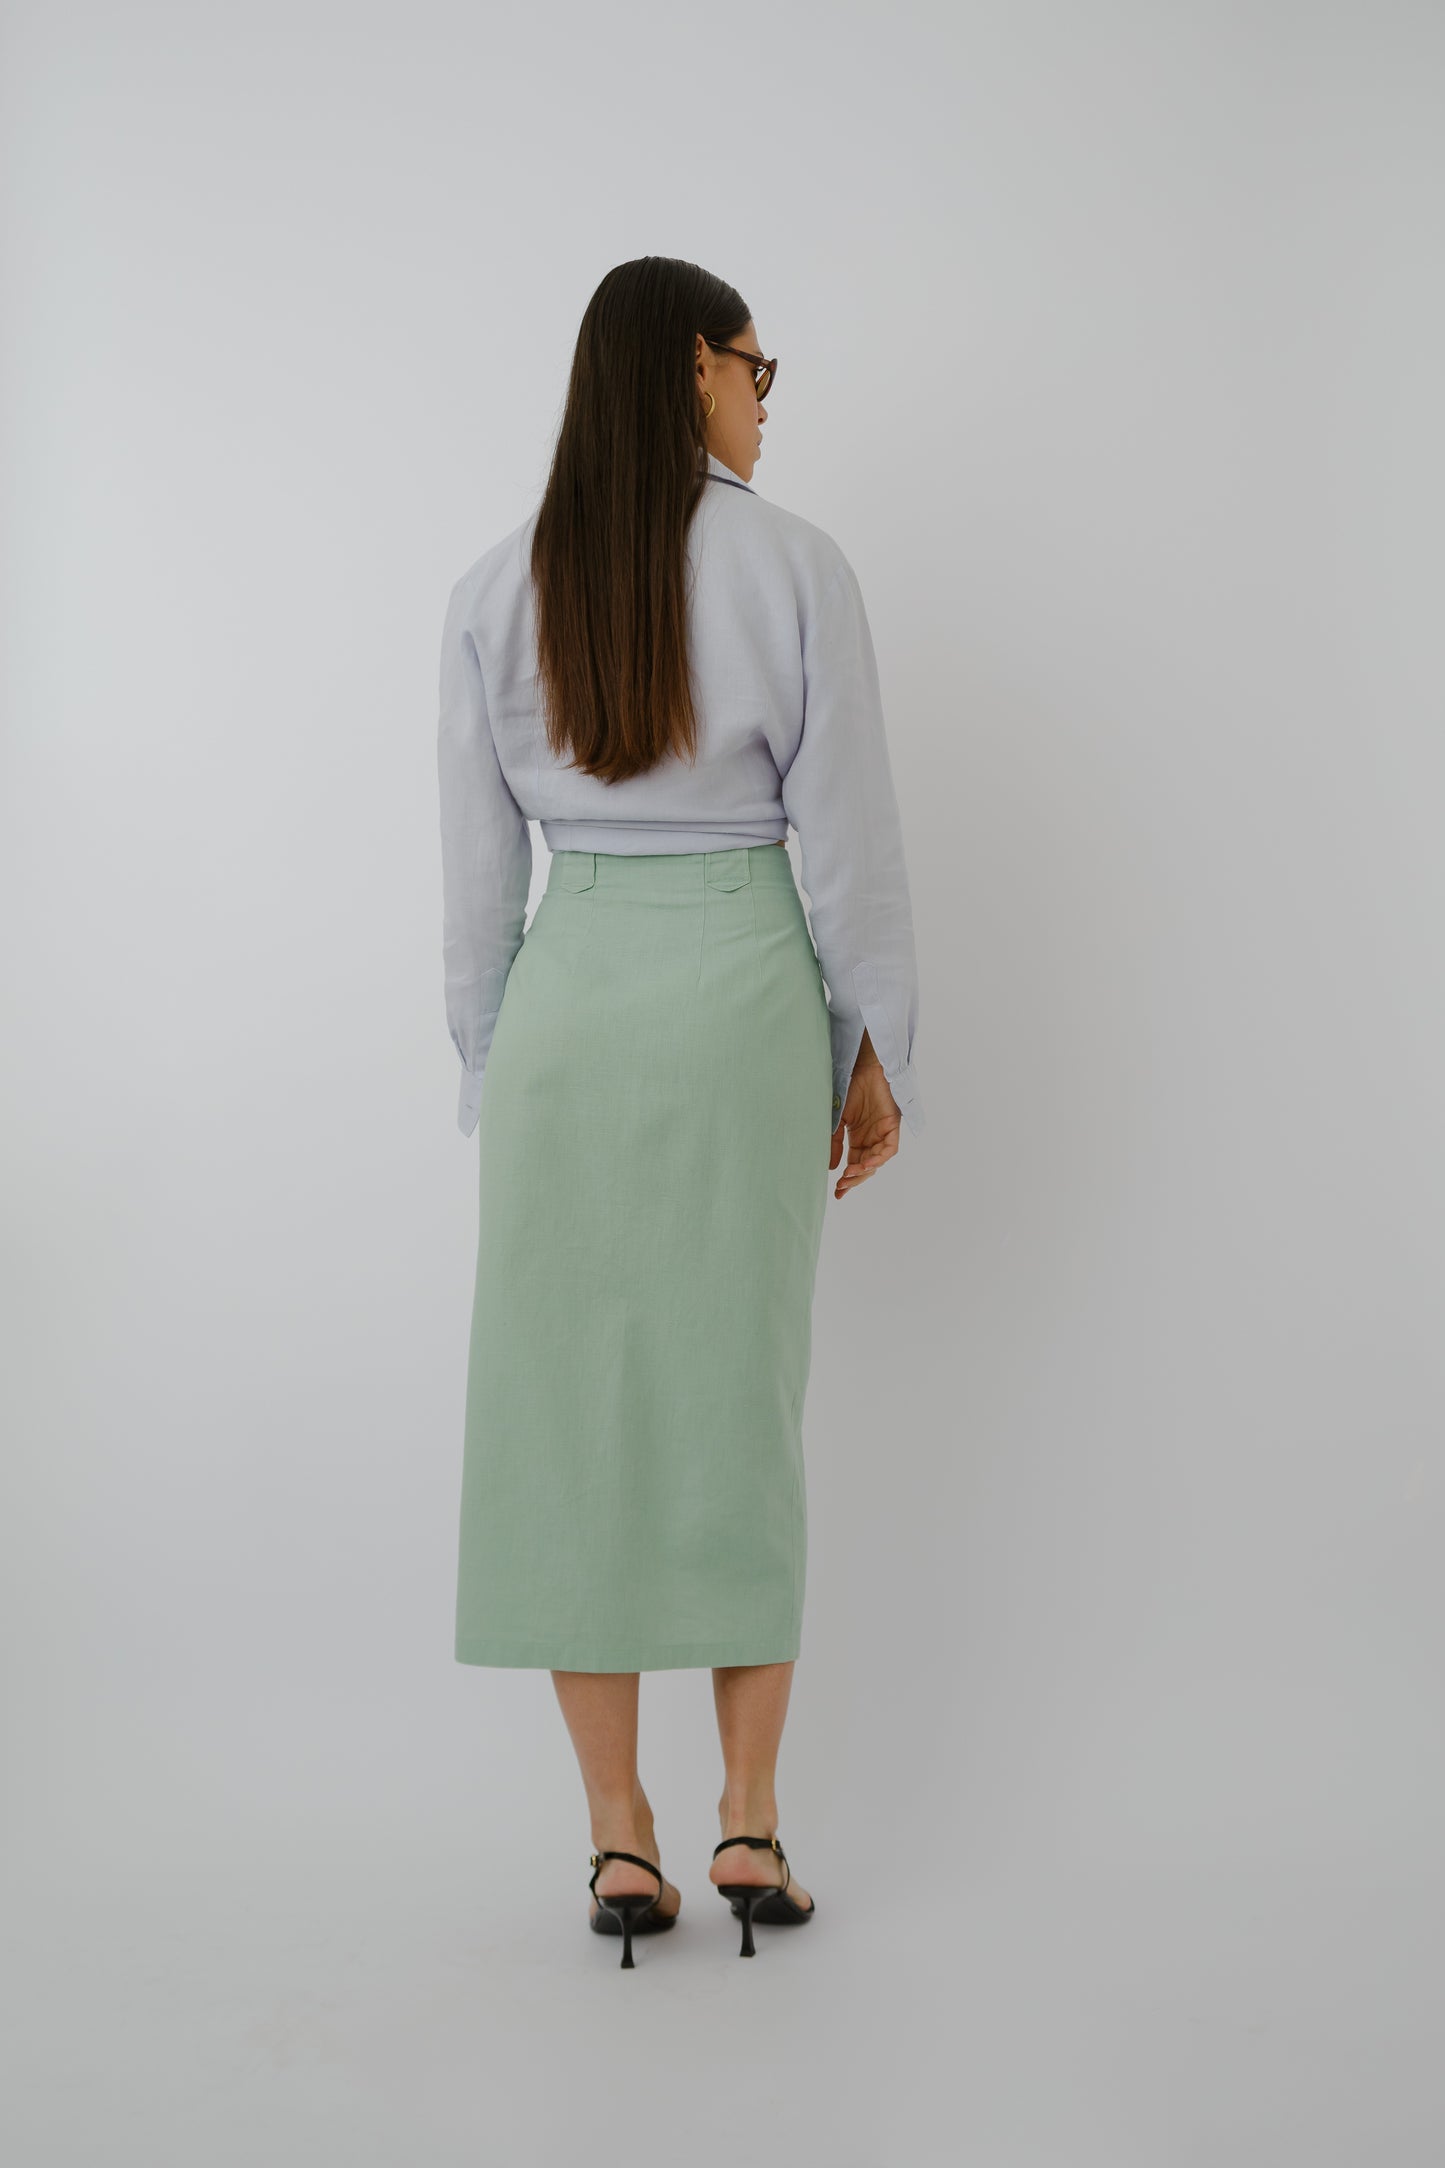 Buttoned up linen skirt